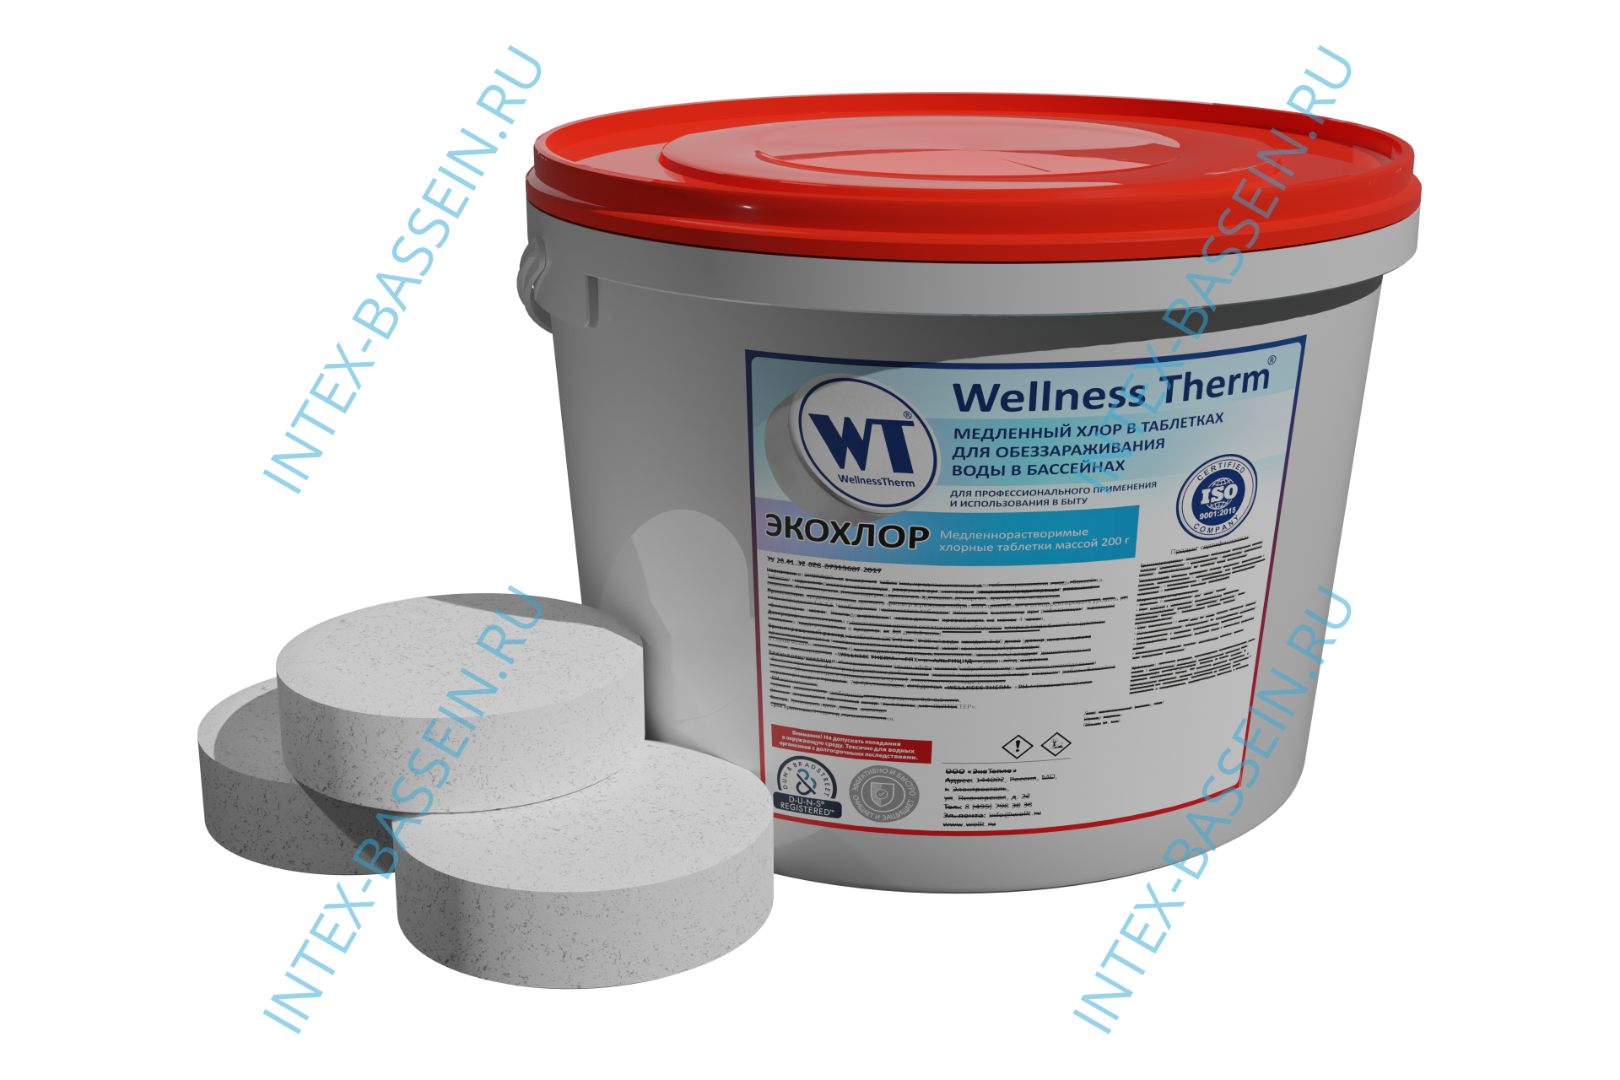 ЭКОХЛОР Wellness Therm медленно растворимые хлорные таблетки 200 г (5 кг), арт. 877437